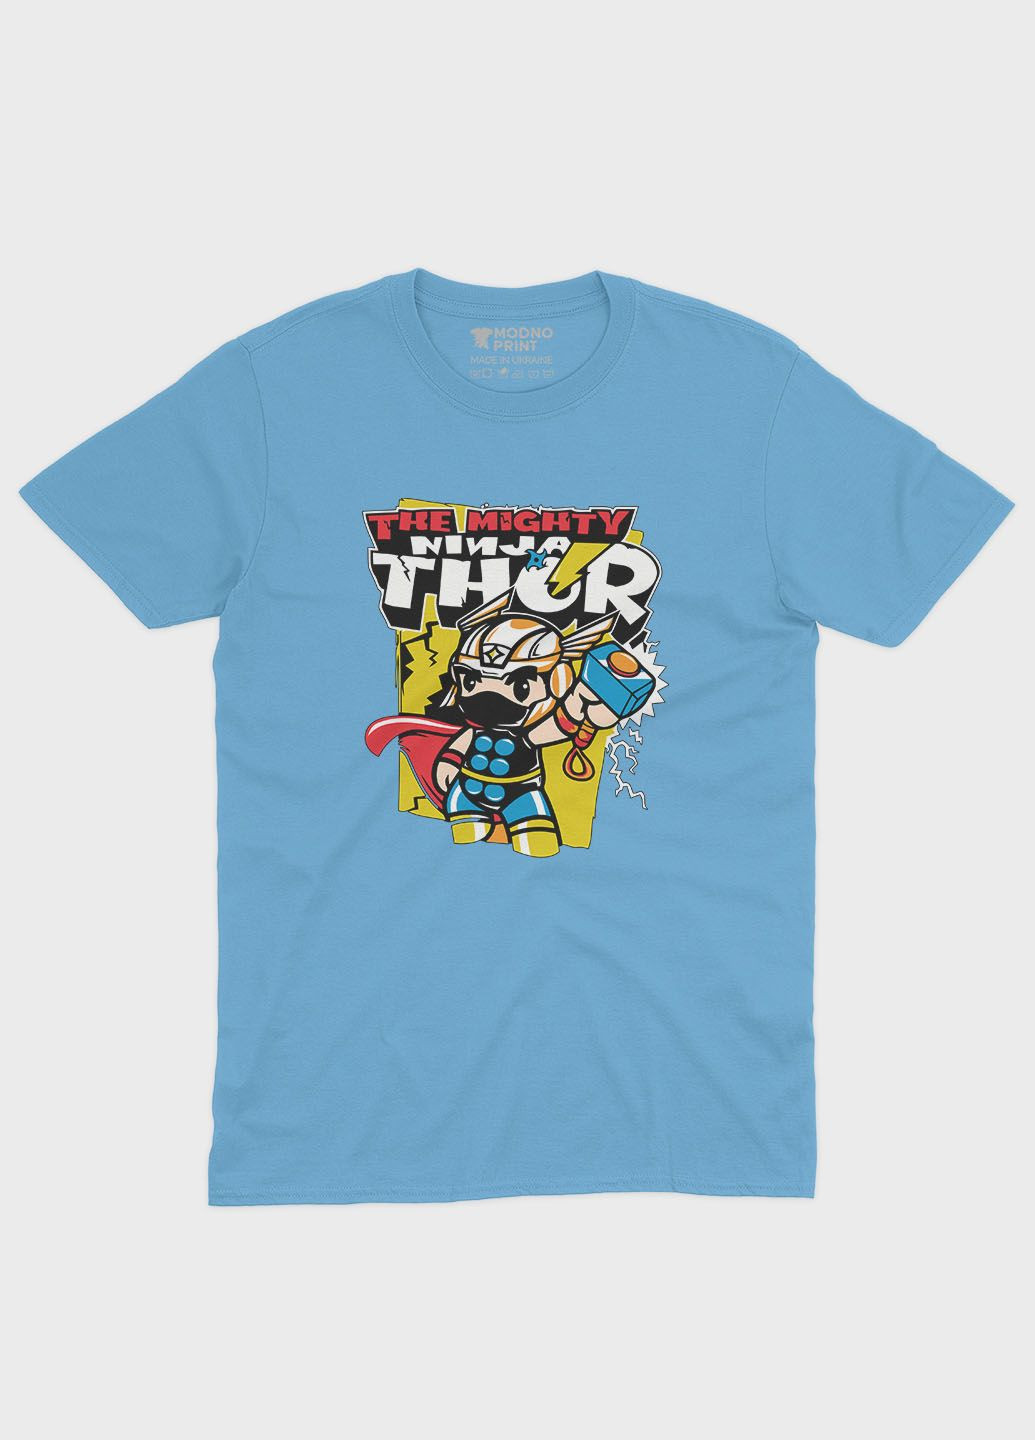 Голубая демисезонная футболка для девочки с принтом супергероя - тор (ts001-1-lbl-006-024-001-g) Modno